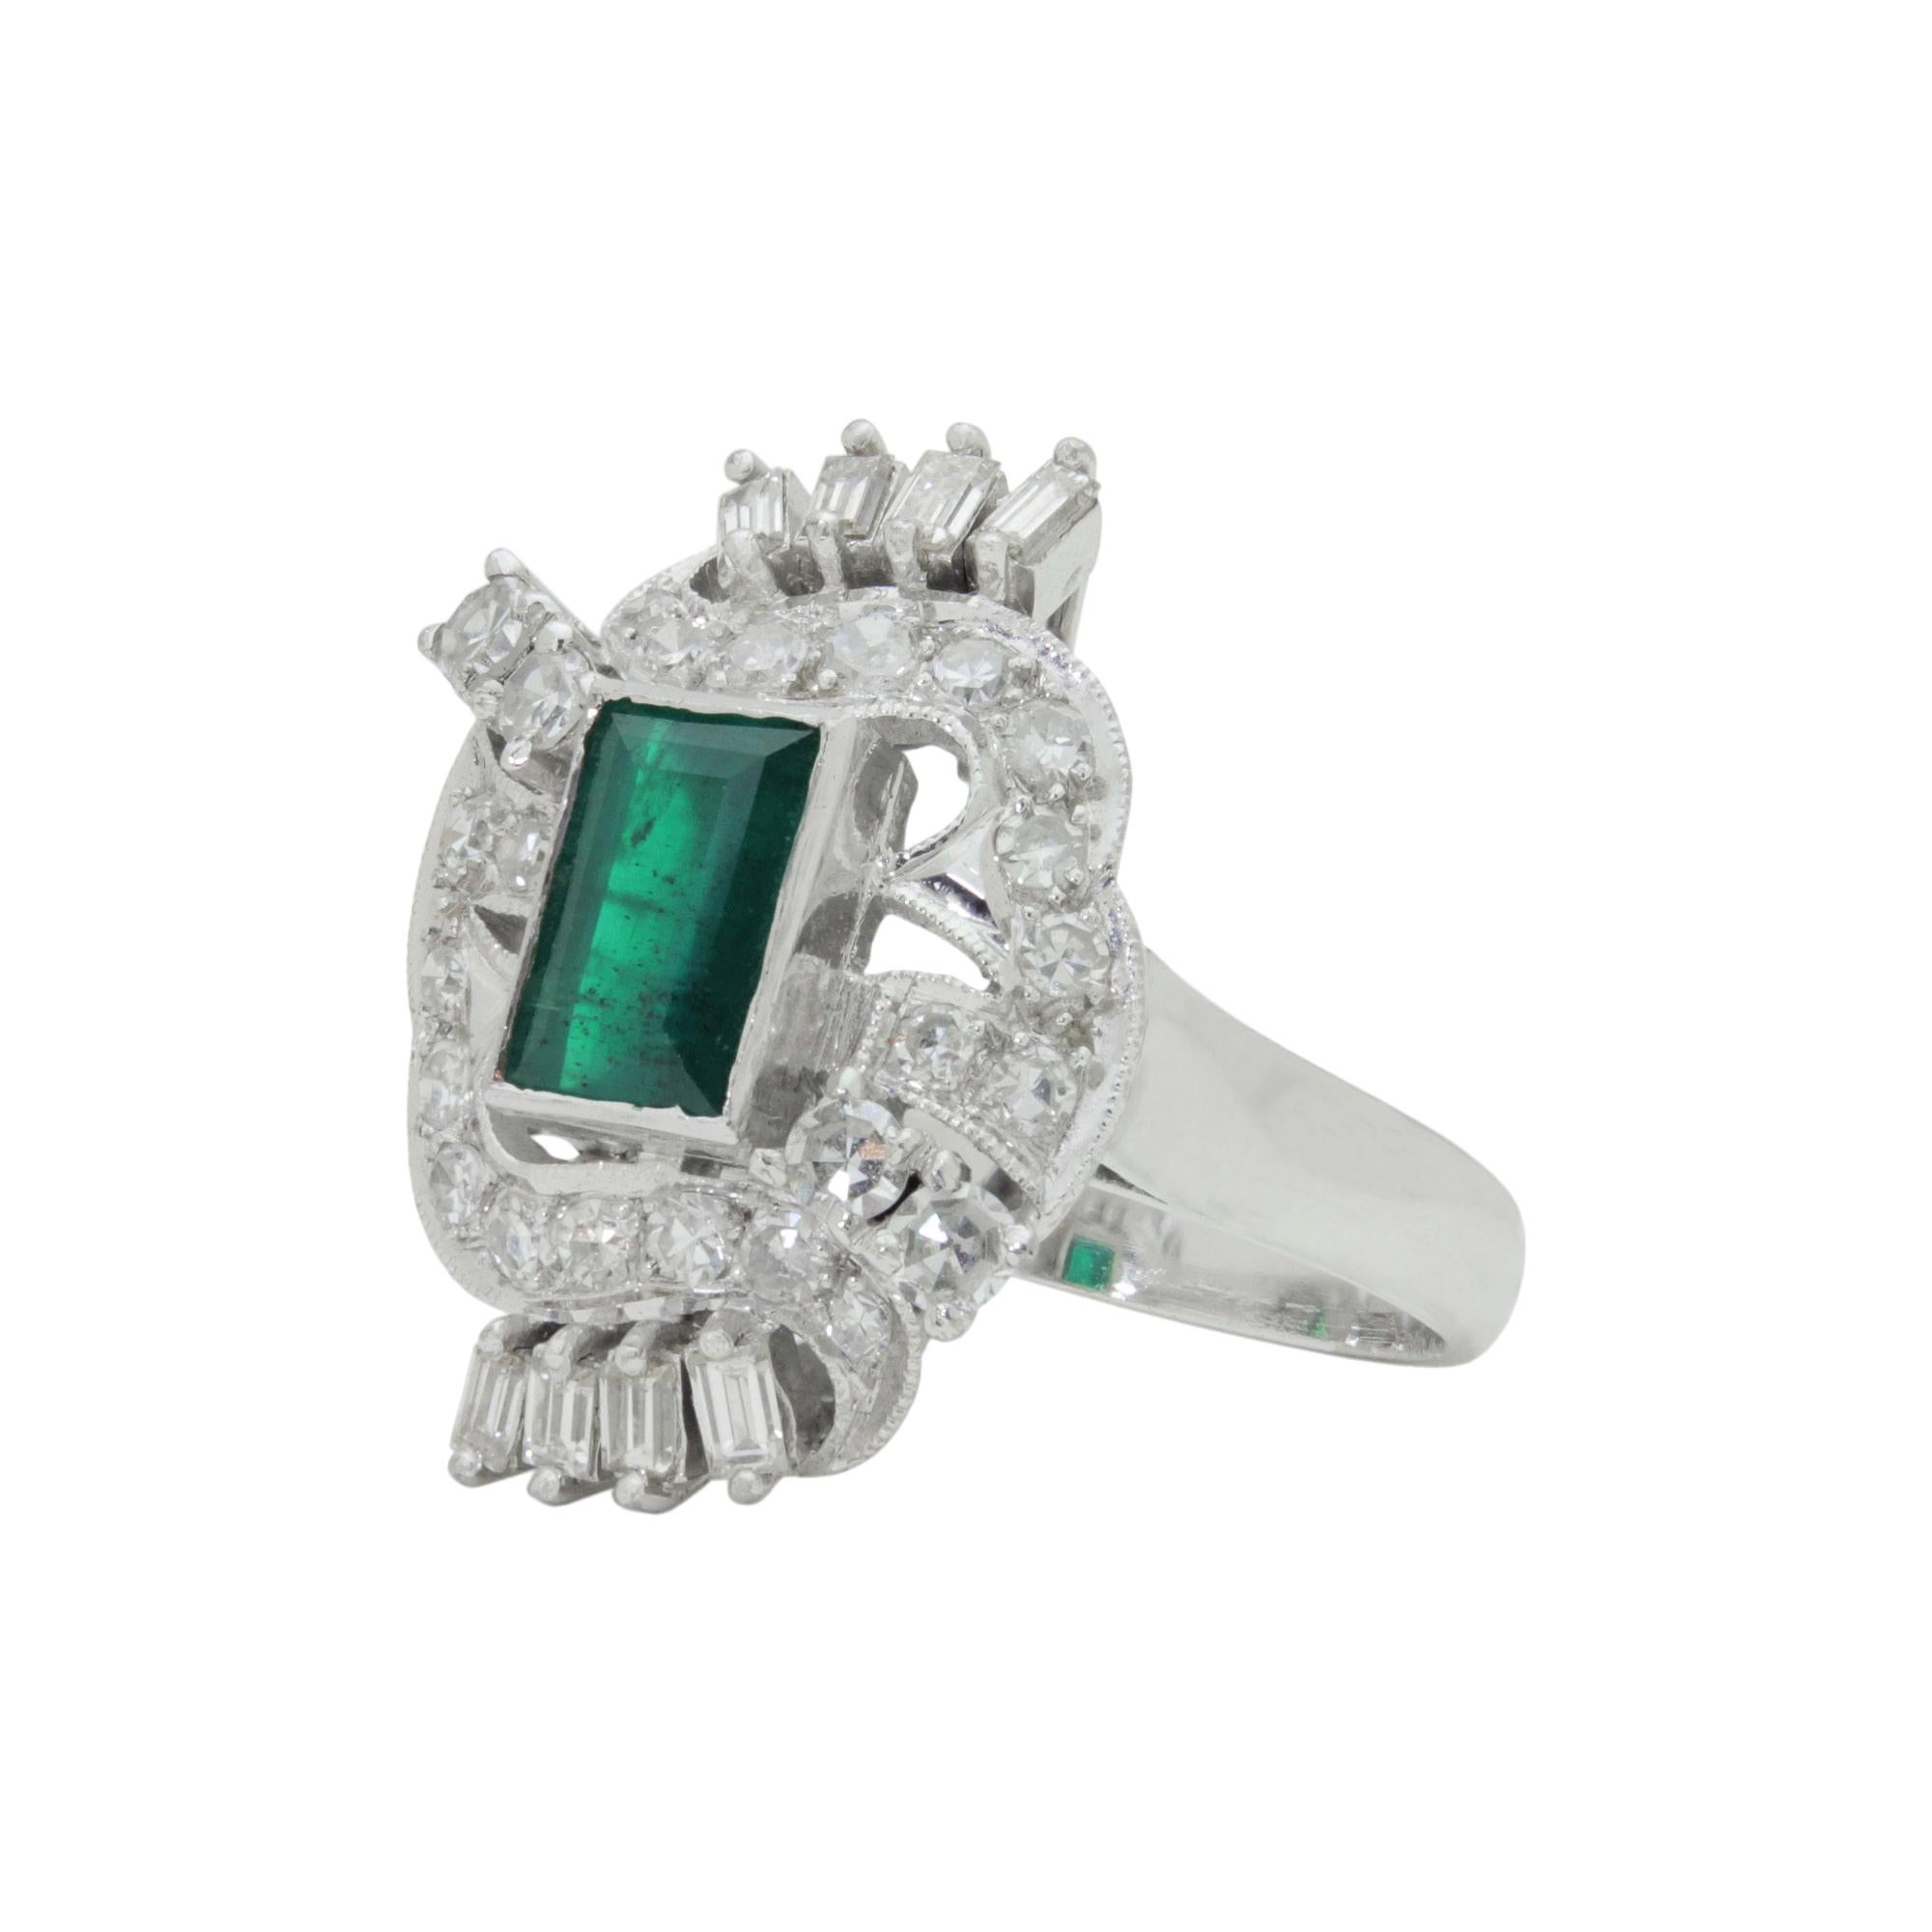 Retro Period, Platinum, Diamond and Emerald Cocktail Ring